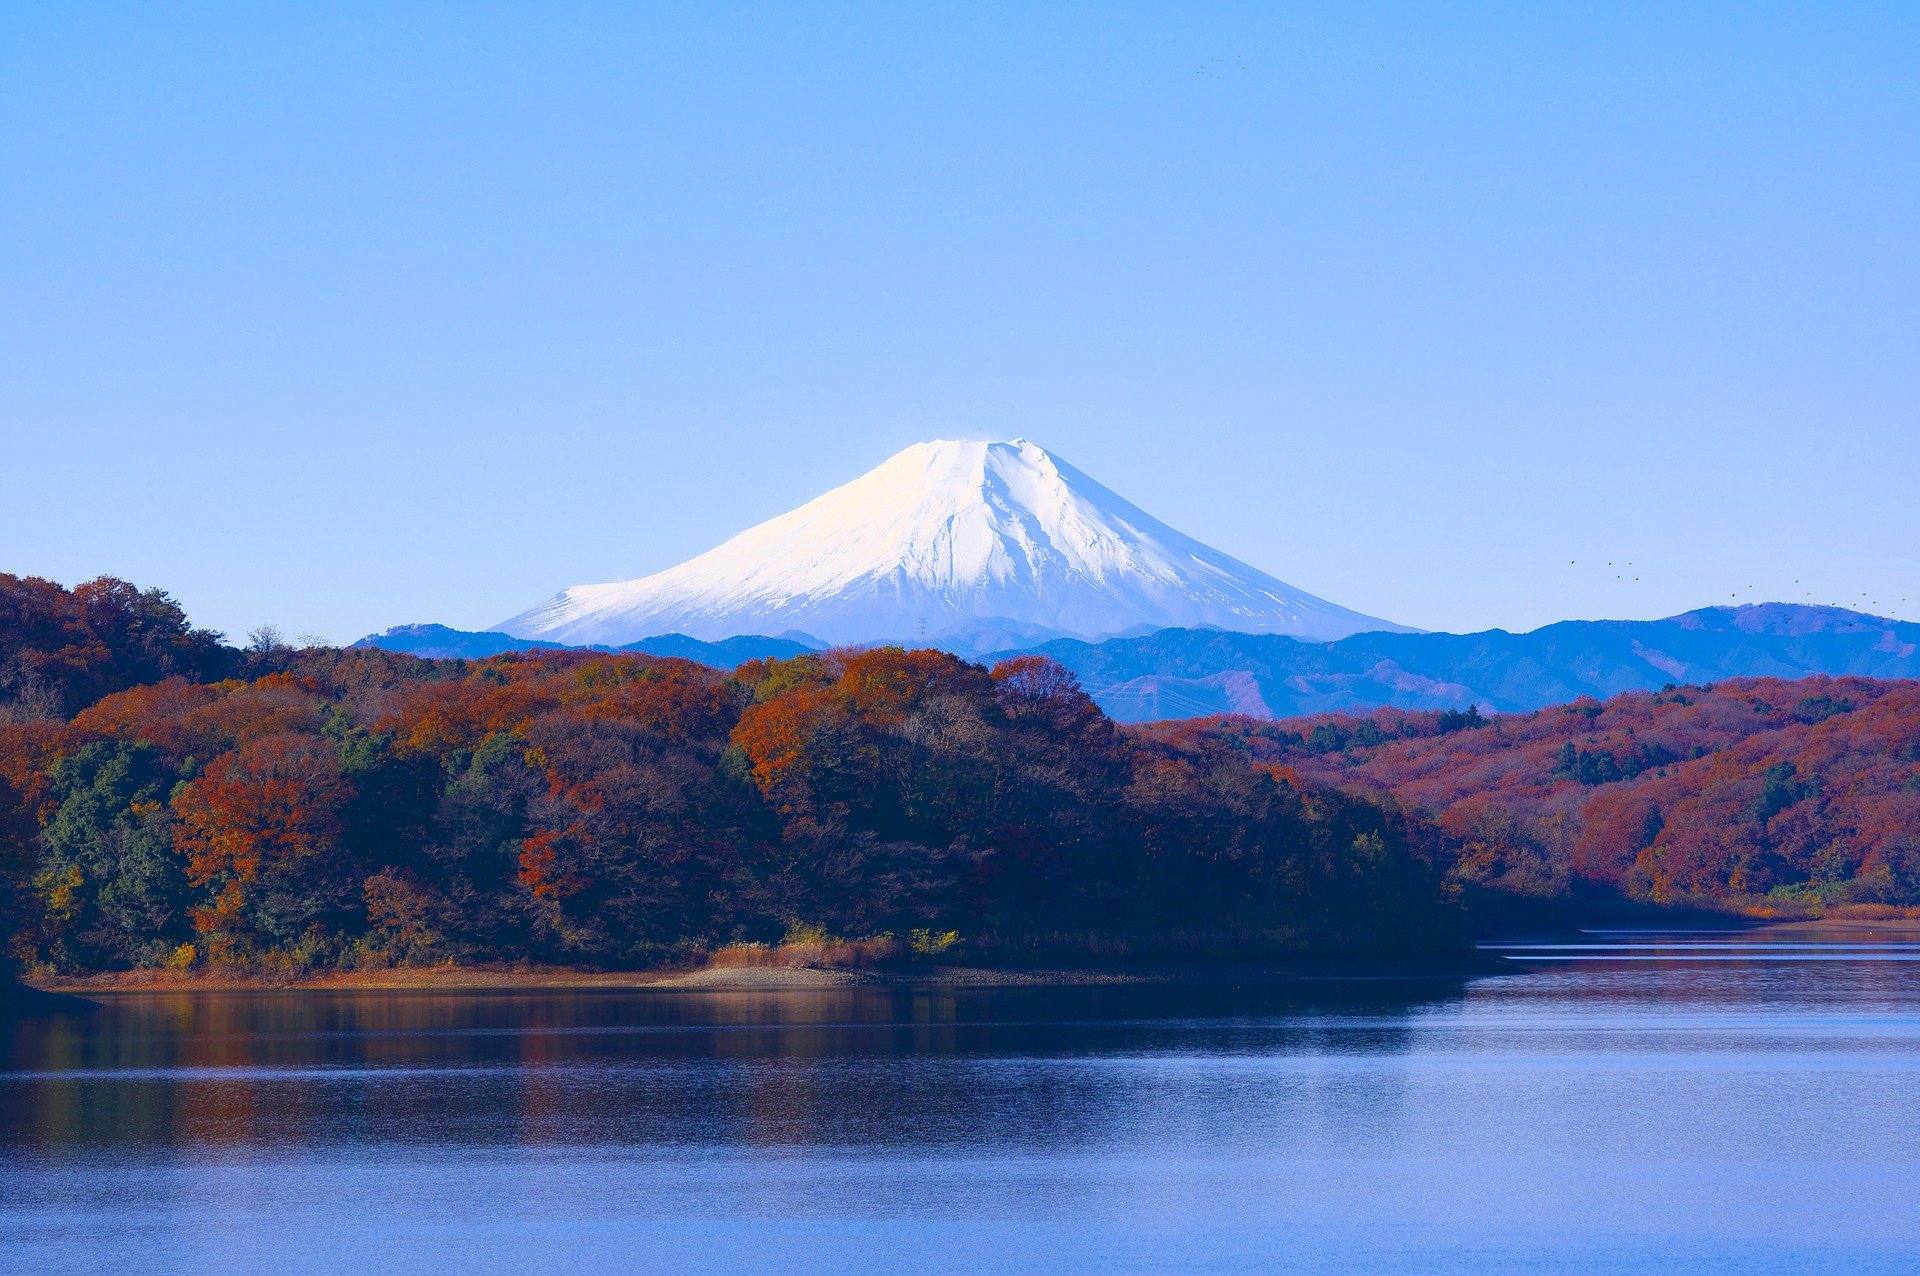 quiz wiedzy test geograficzny miasta państwa europa przyroda geografia nauka zabawa japonia azja tokio japan tokyo fudżi wulkan góra